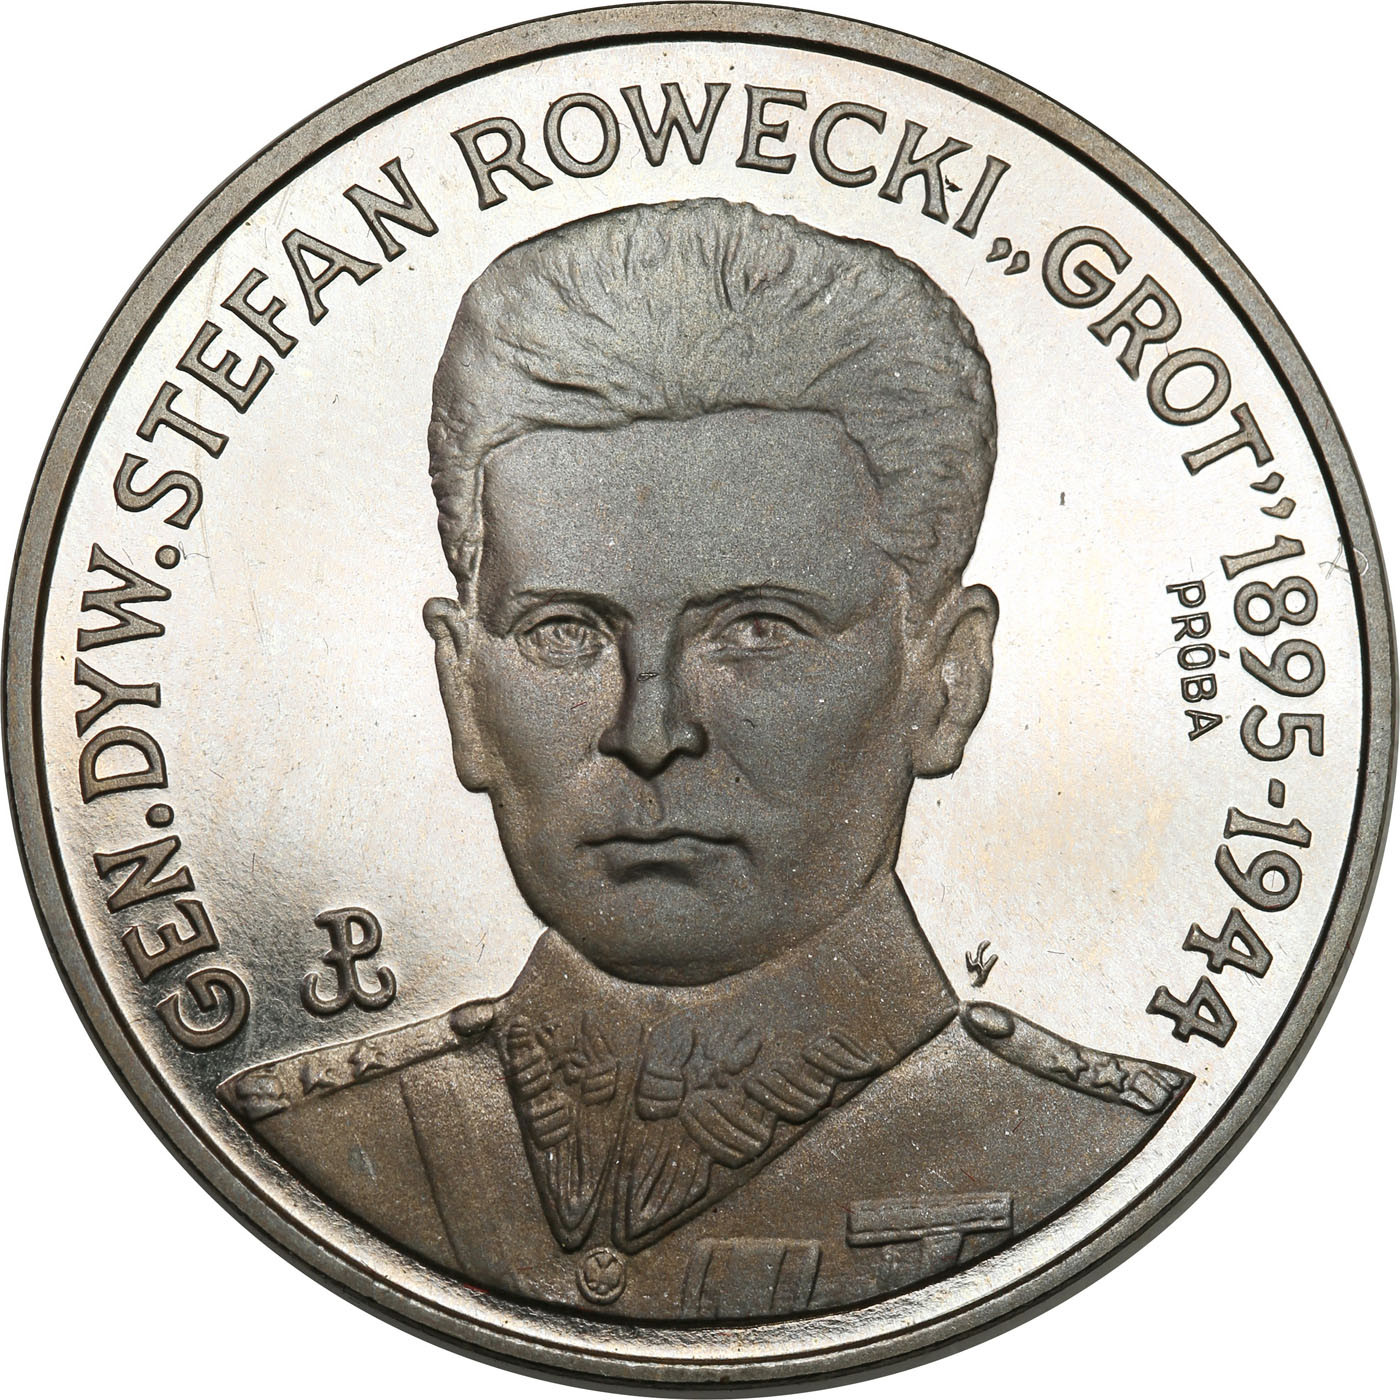 PRL. PRÓBA Nikiel 200 000 złotych 1990 – Rowecki Grot